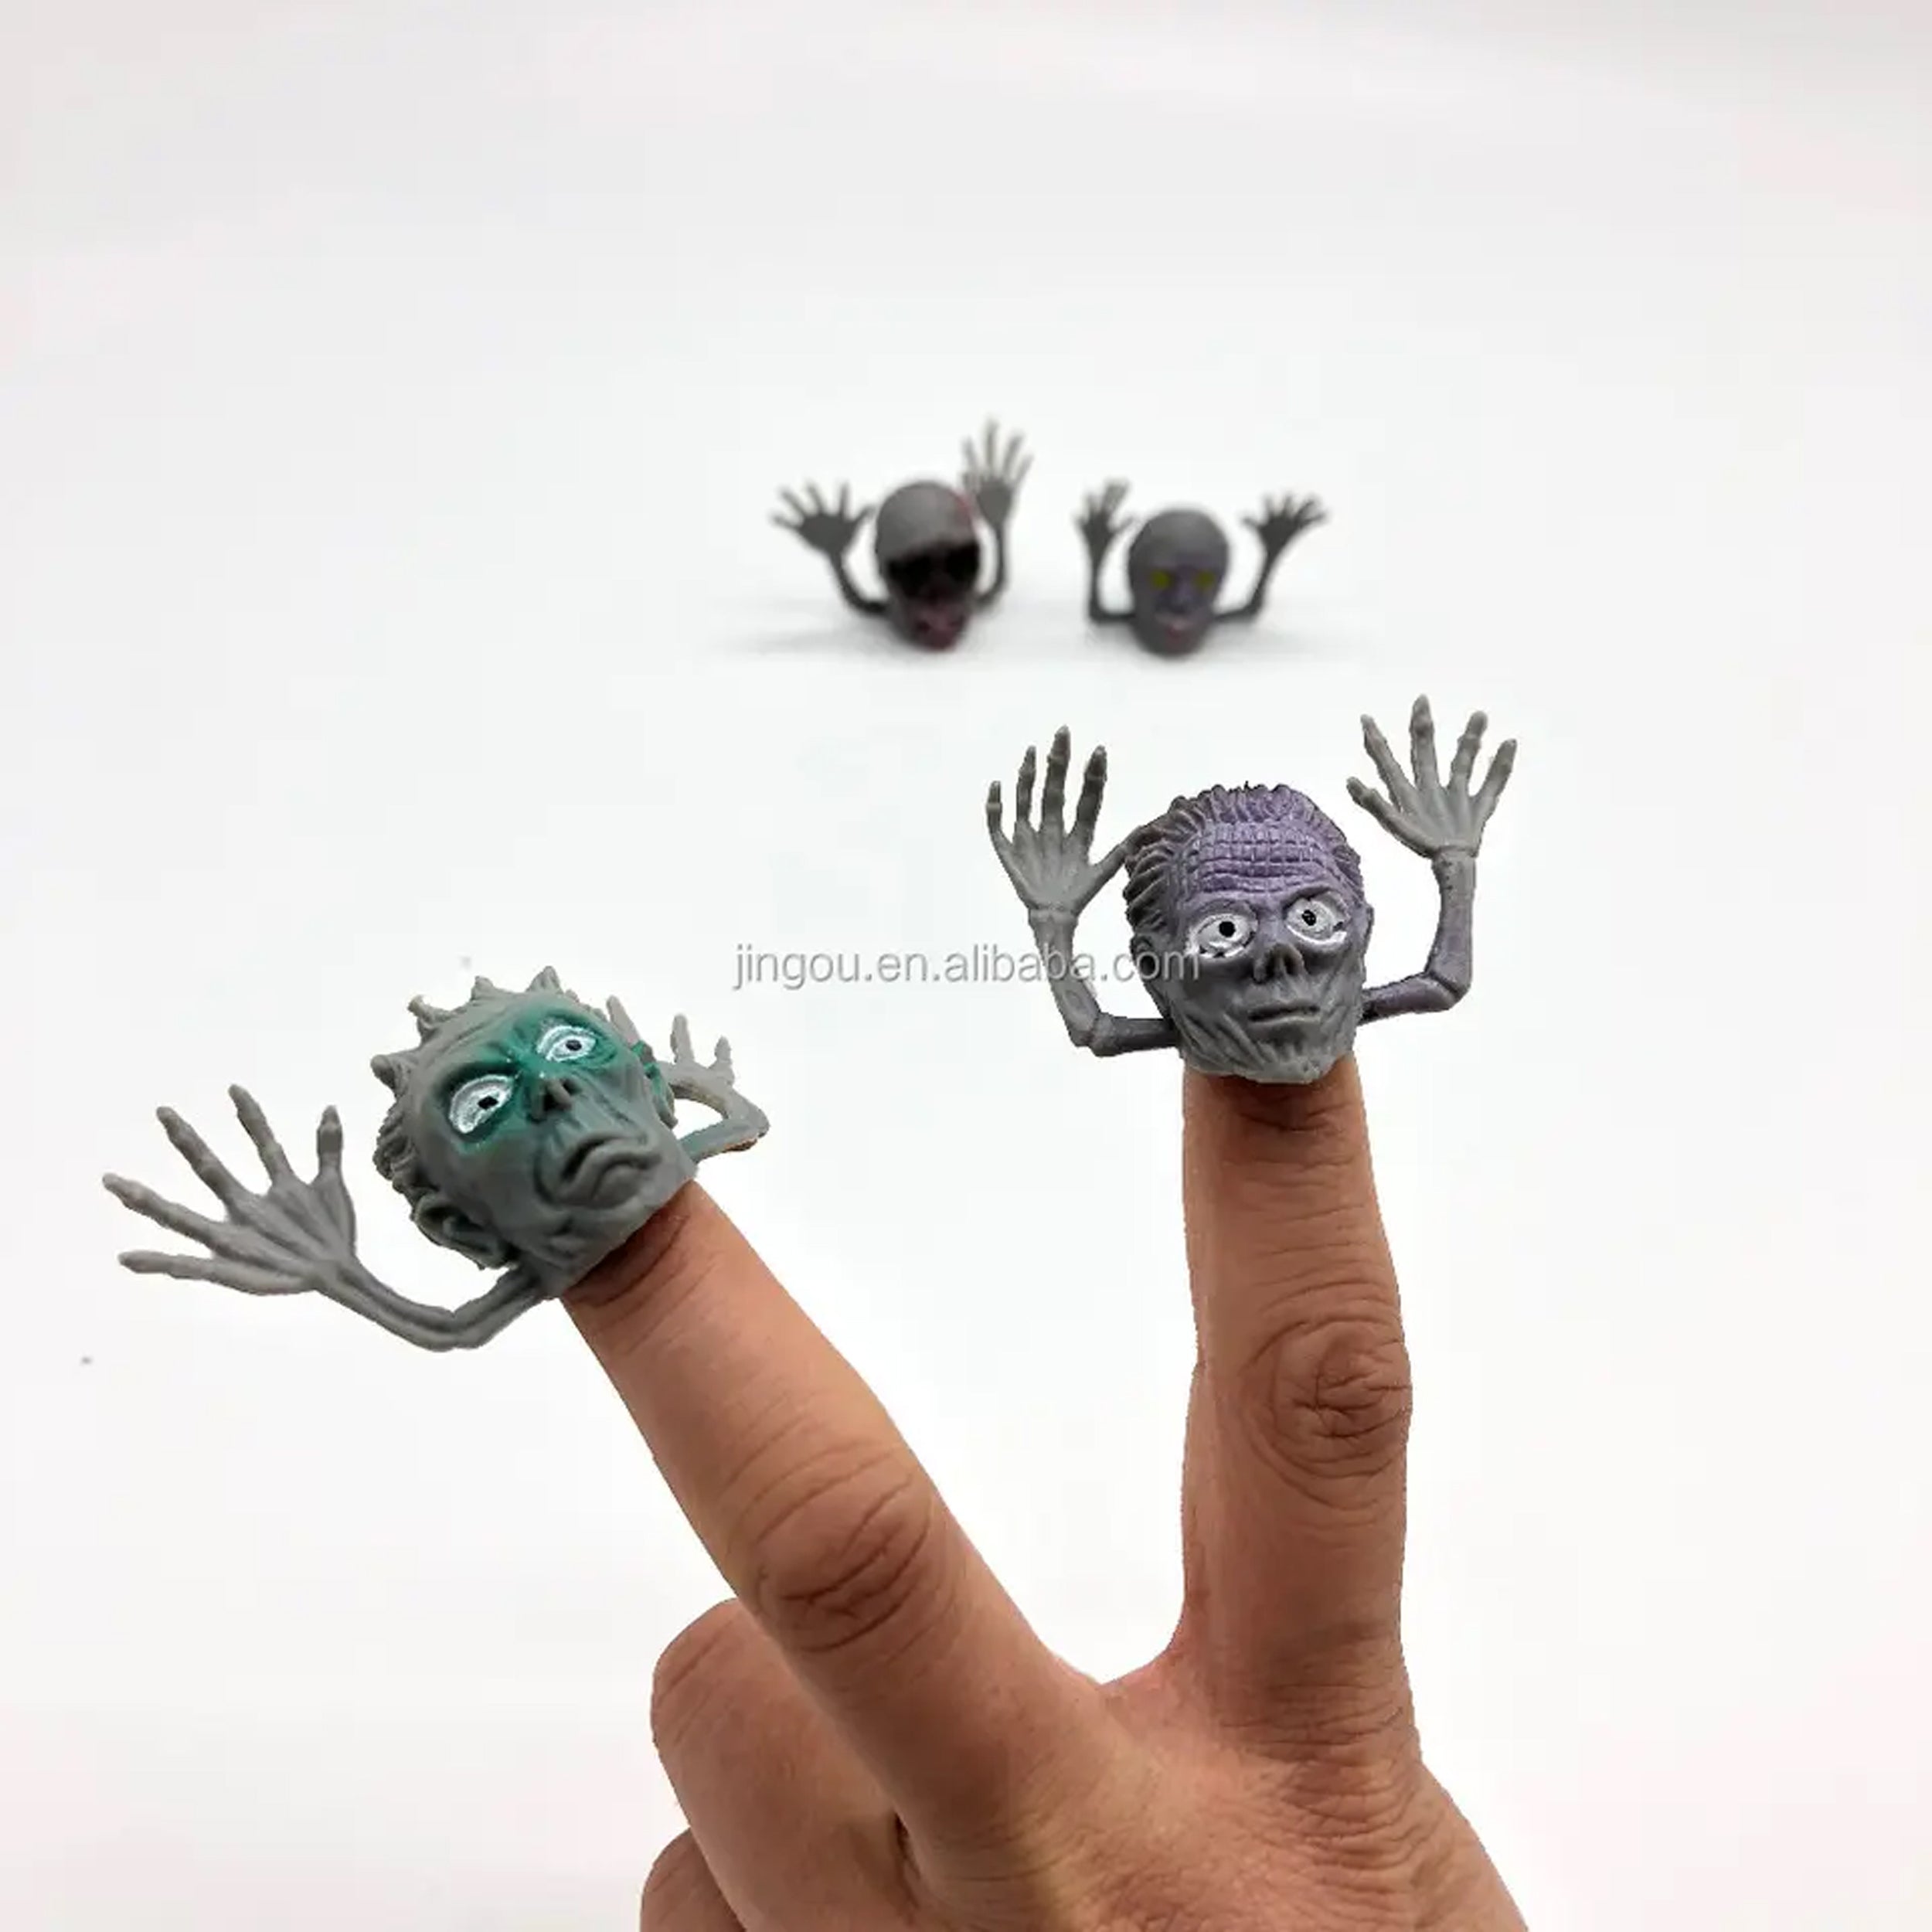 Monster Finger Puppet Toys for Kids